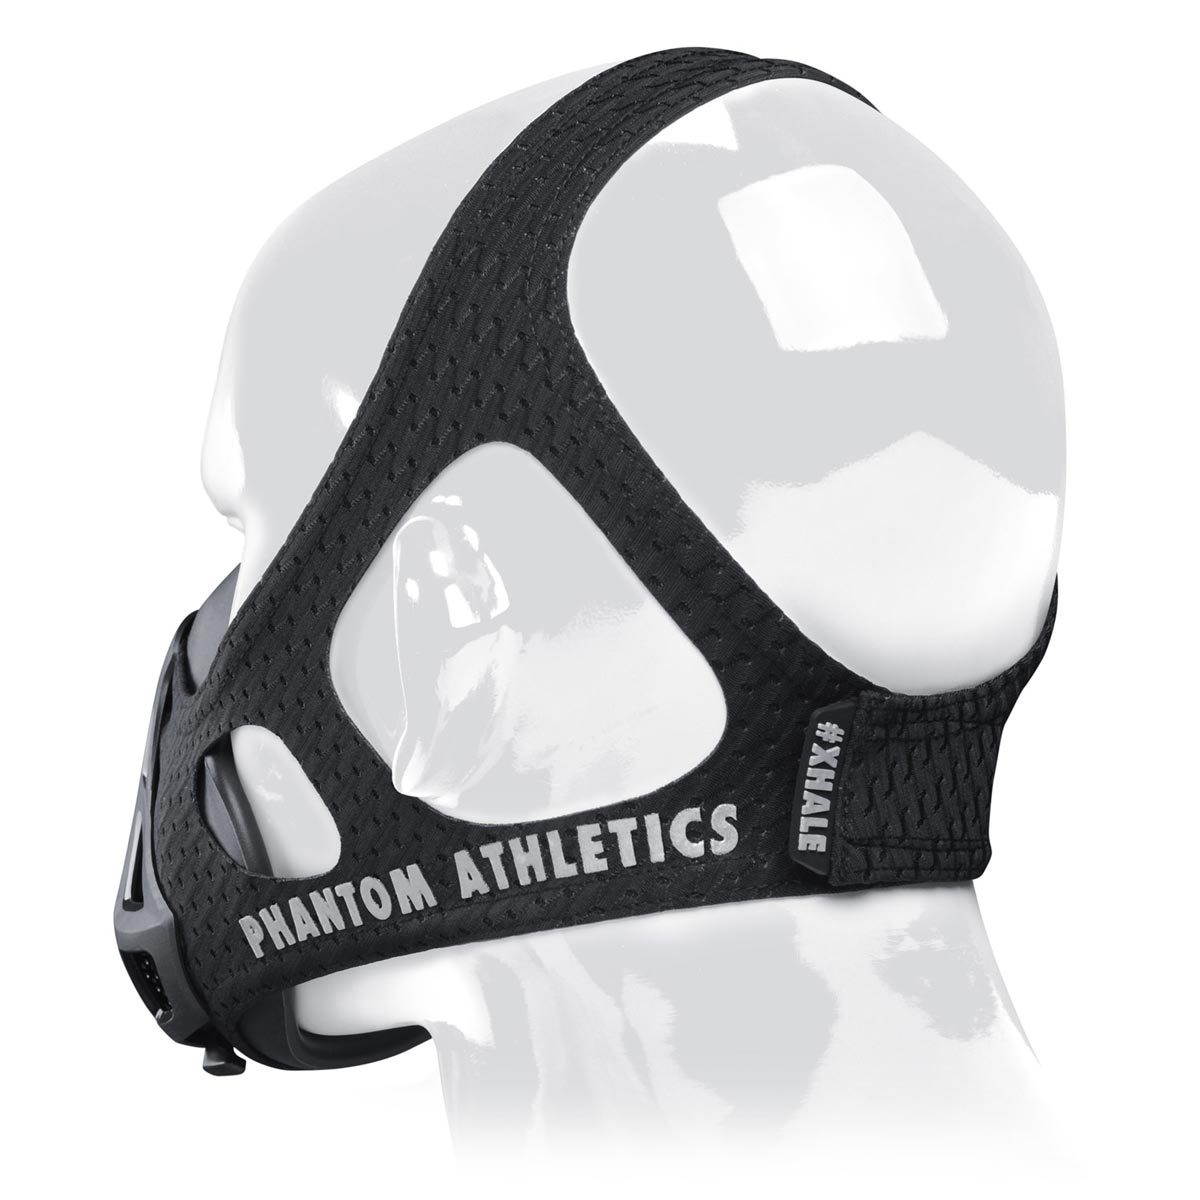 Die Phantom Trainingsmaske verfügt über ein patentiertes Kopfband um dir ein Maximum an Halt im Training zu geben.